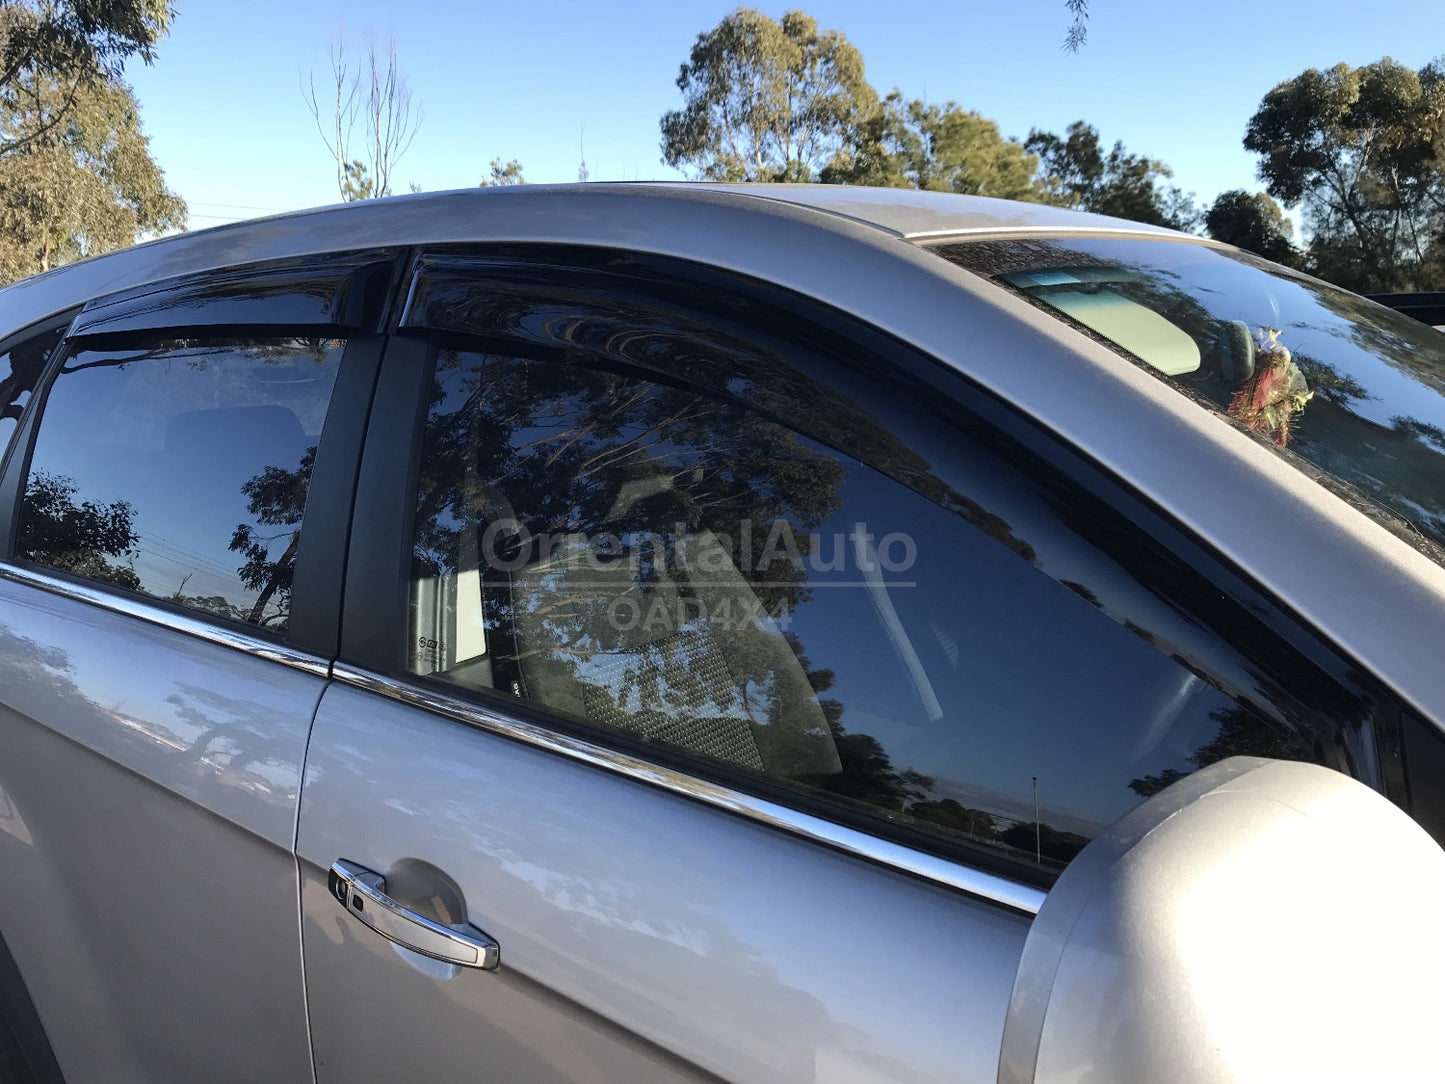 Premium Weathershields Weather Shields Window Visor For Holden Captiva 2006-2019